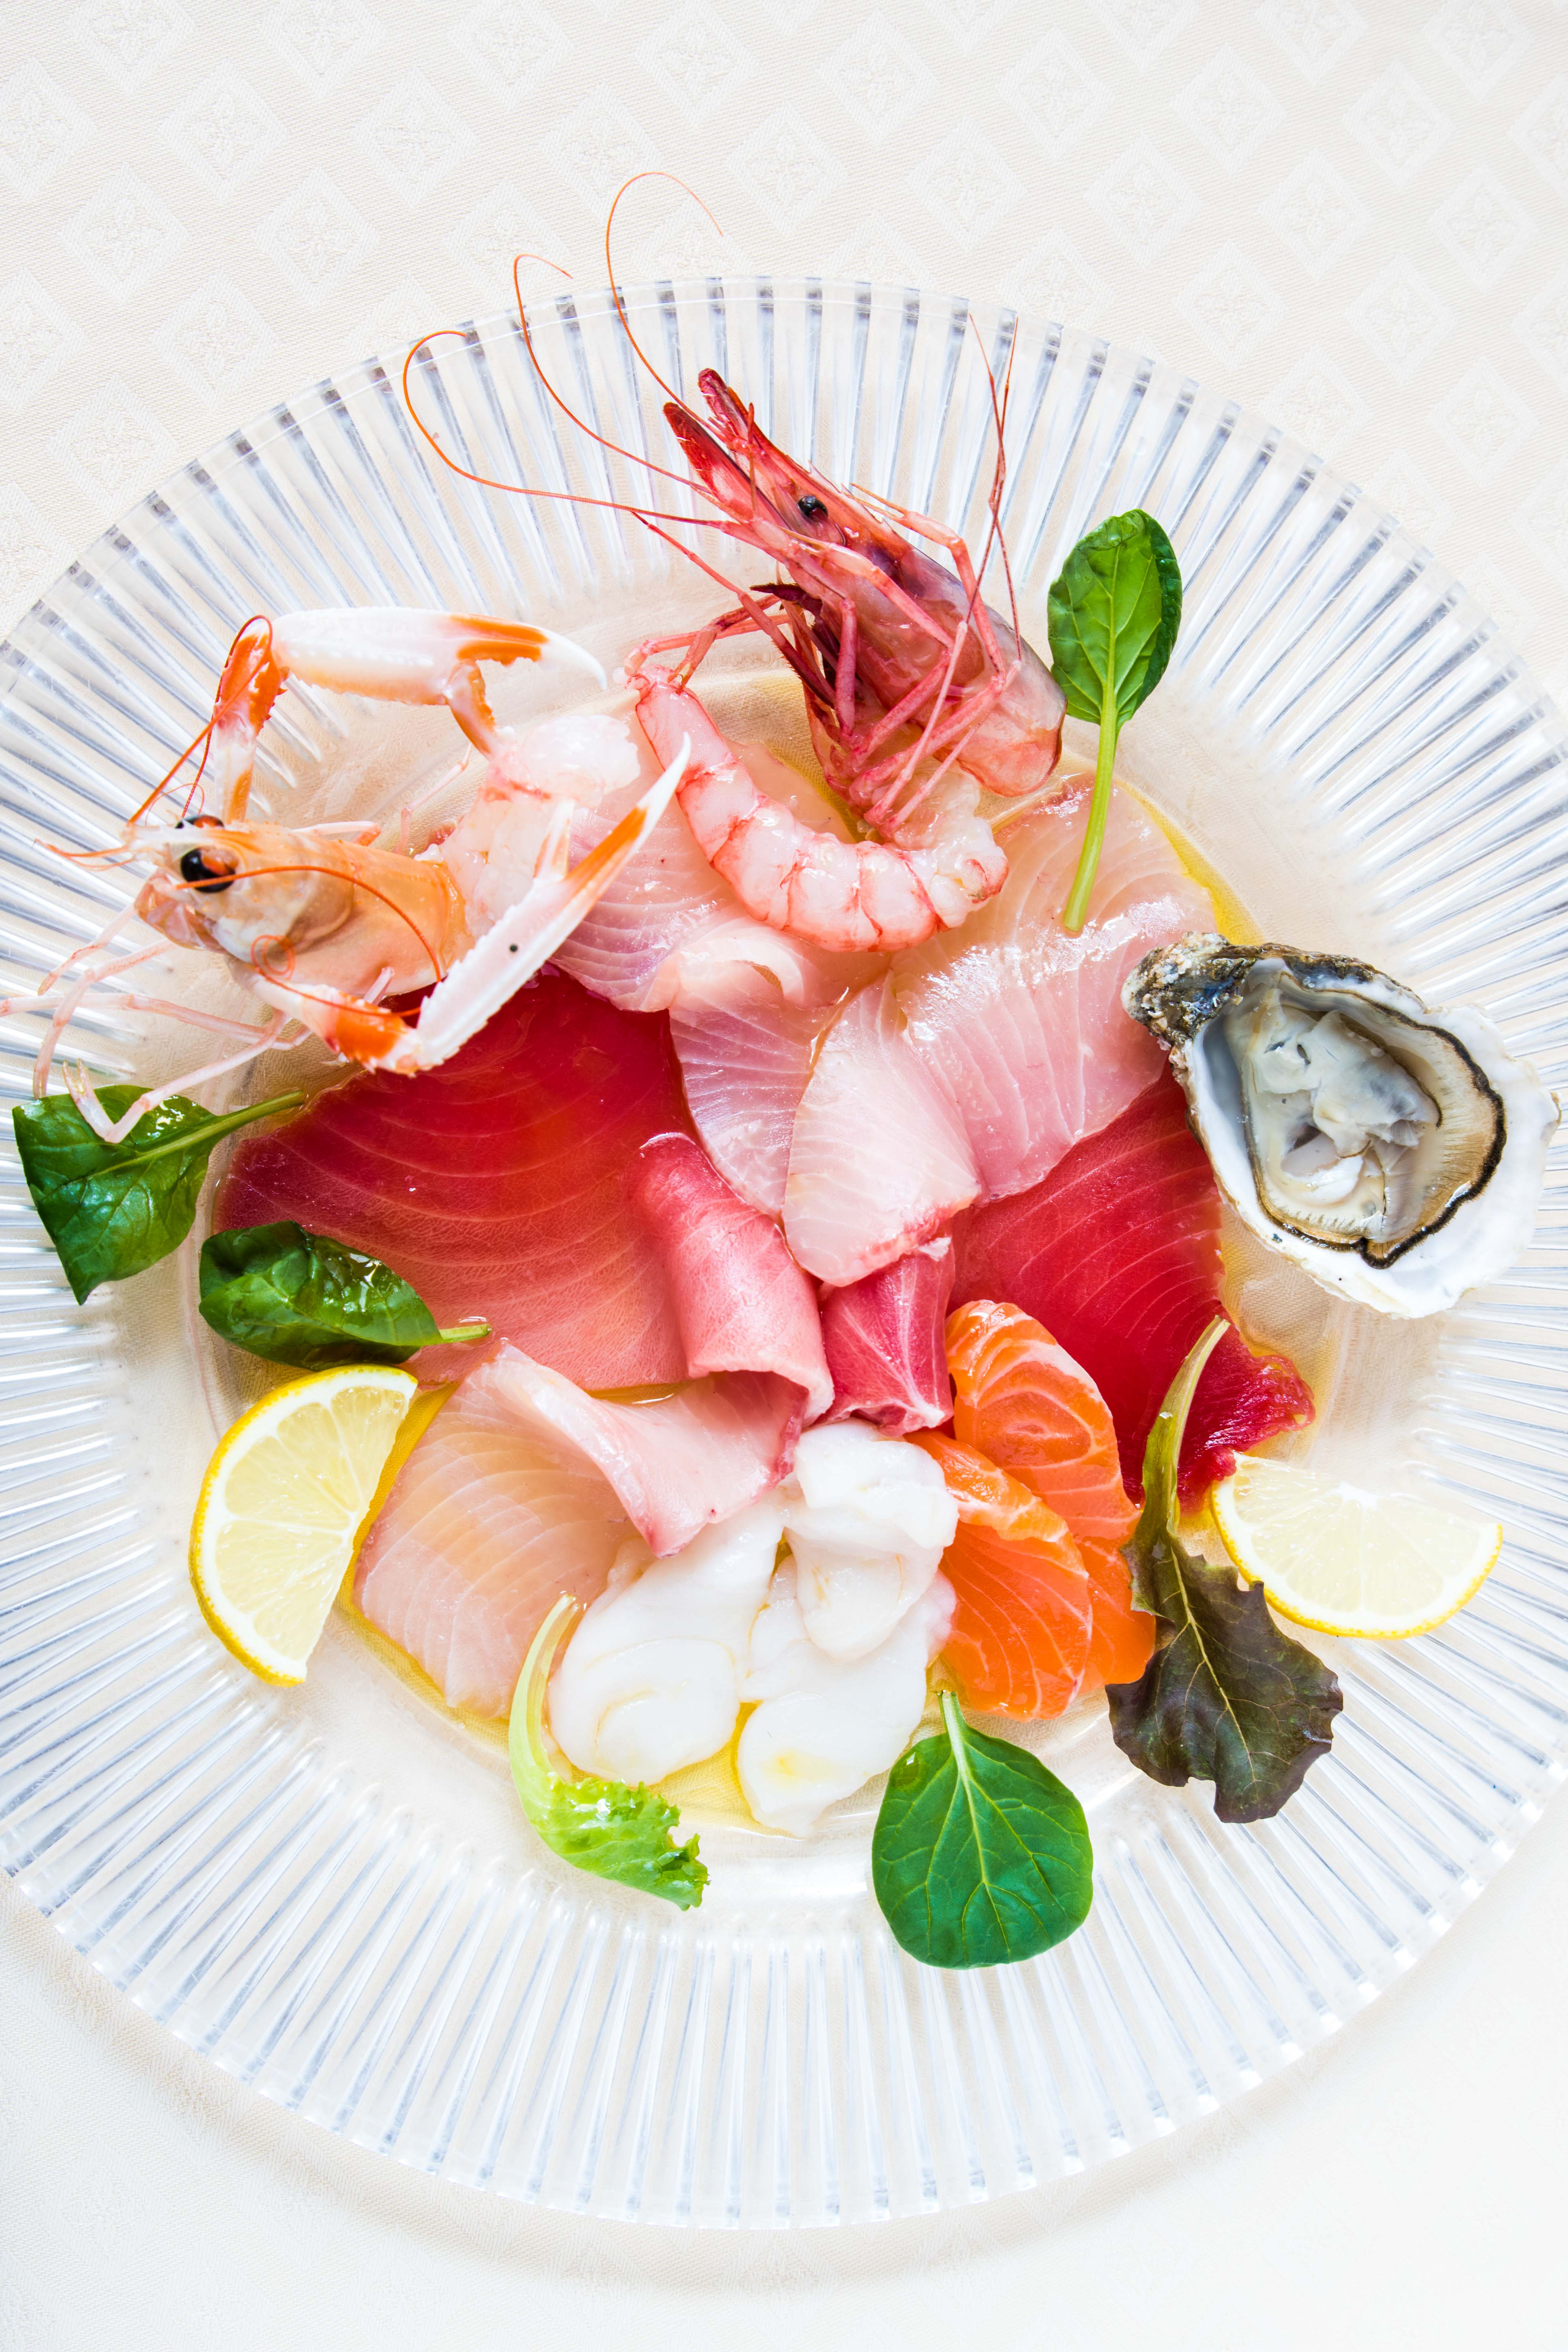 The best seafood restaurants in Genoa